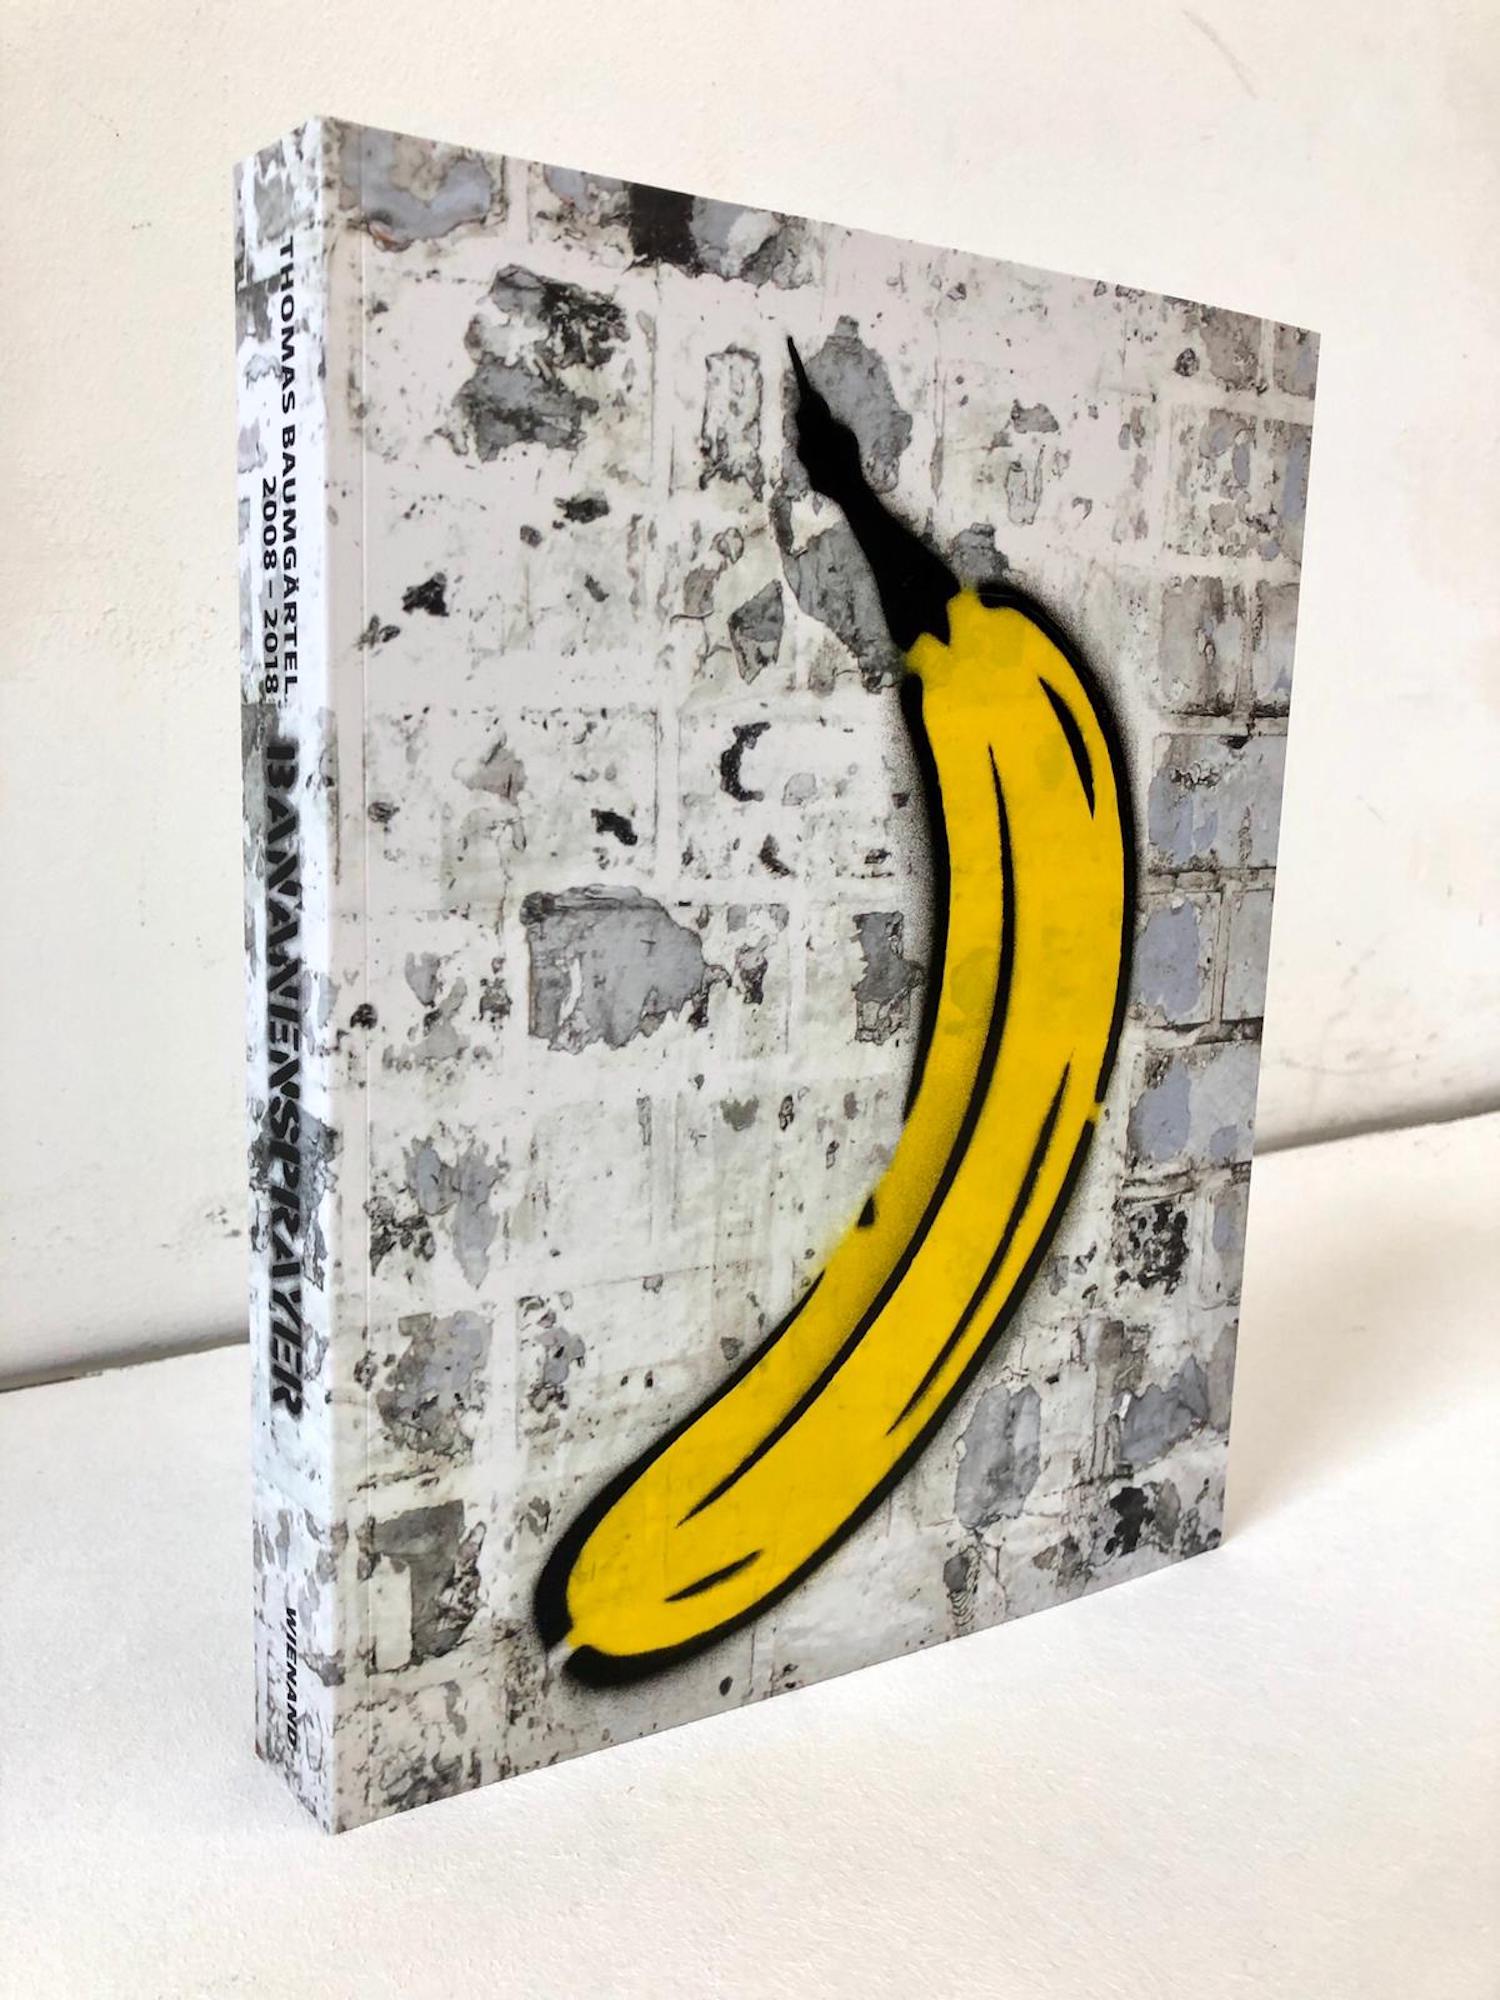 Objekt "Buch mit handgesprayter Banane" (2019) von Thomas Baumgärtel